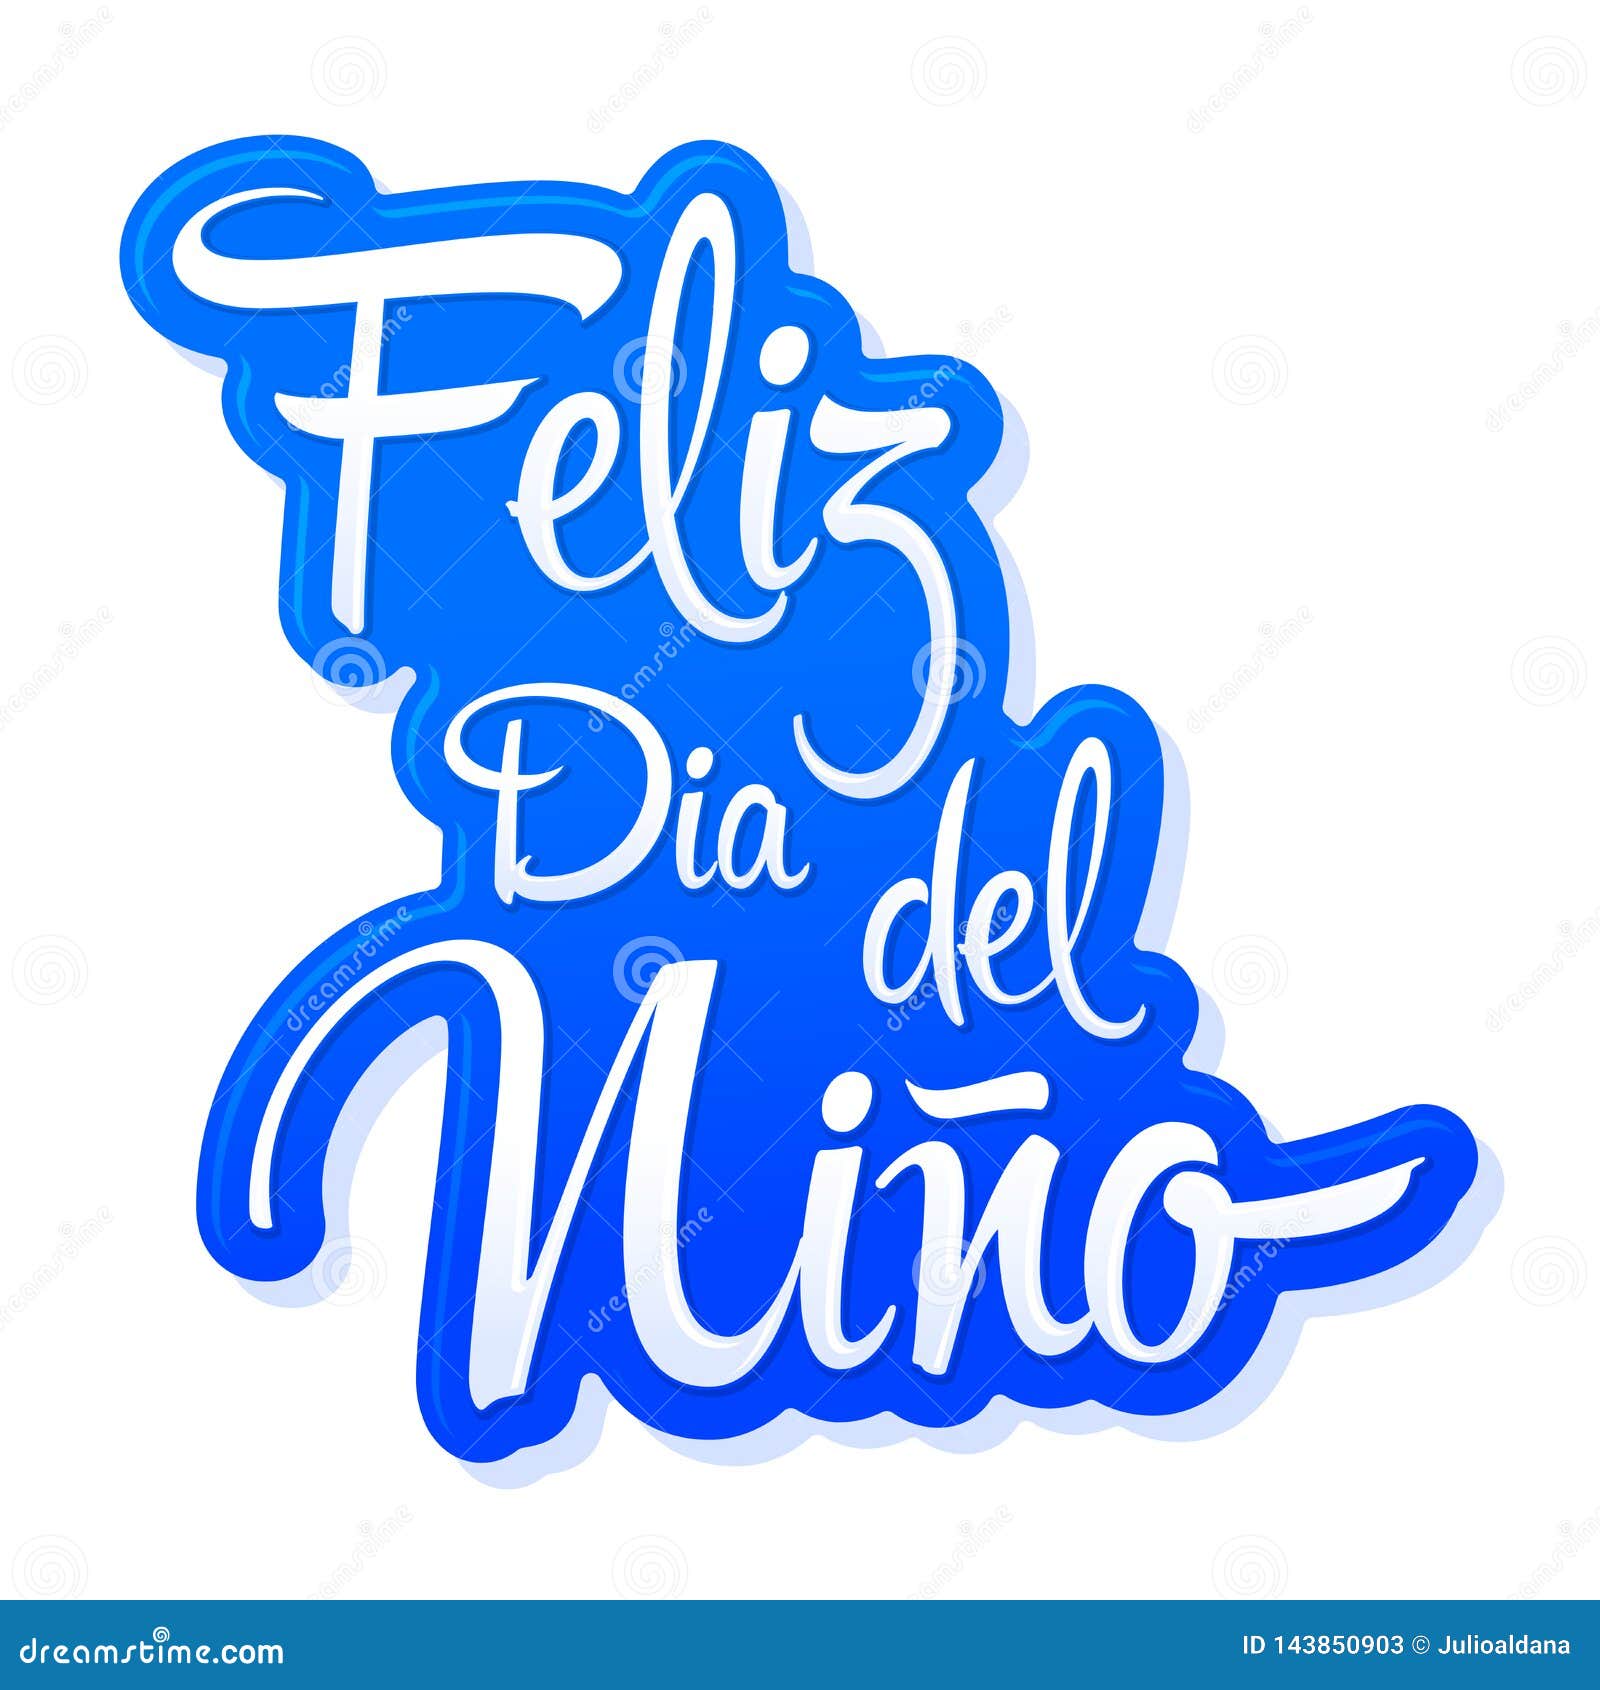 feliz dia del nino, happy children day spanish text,  